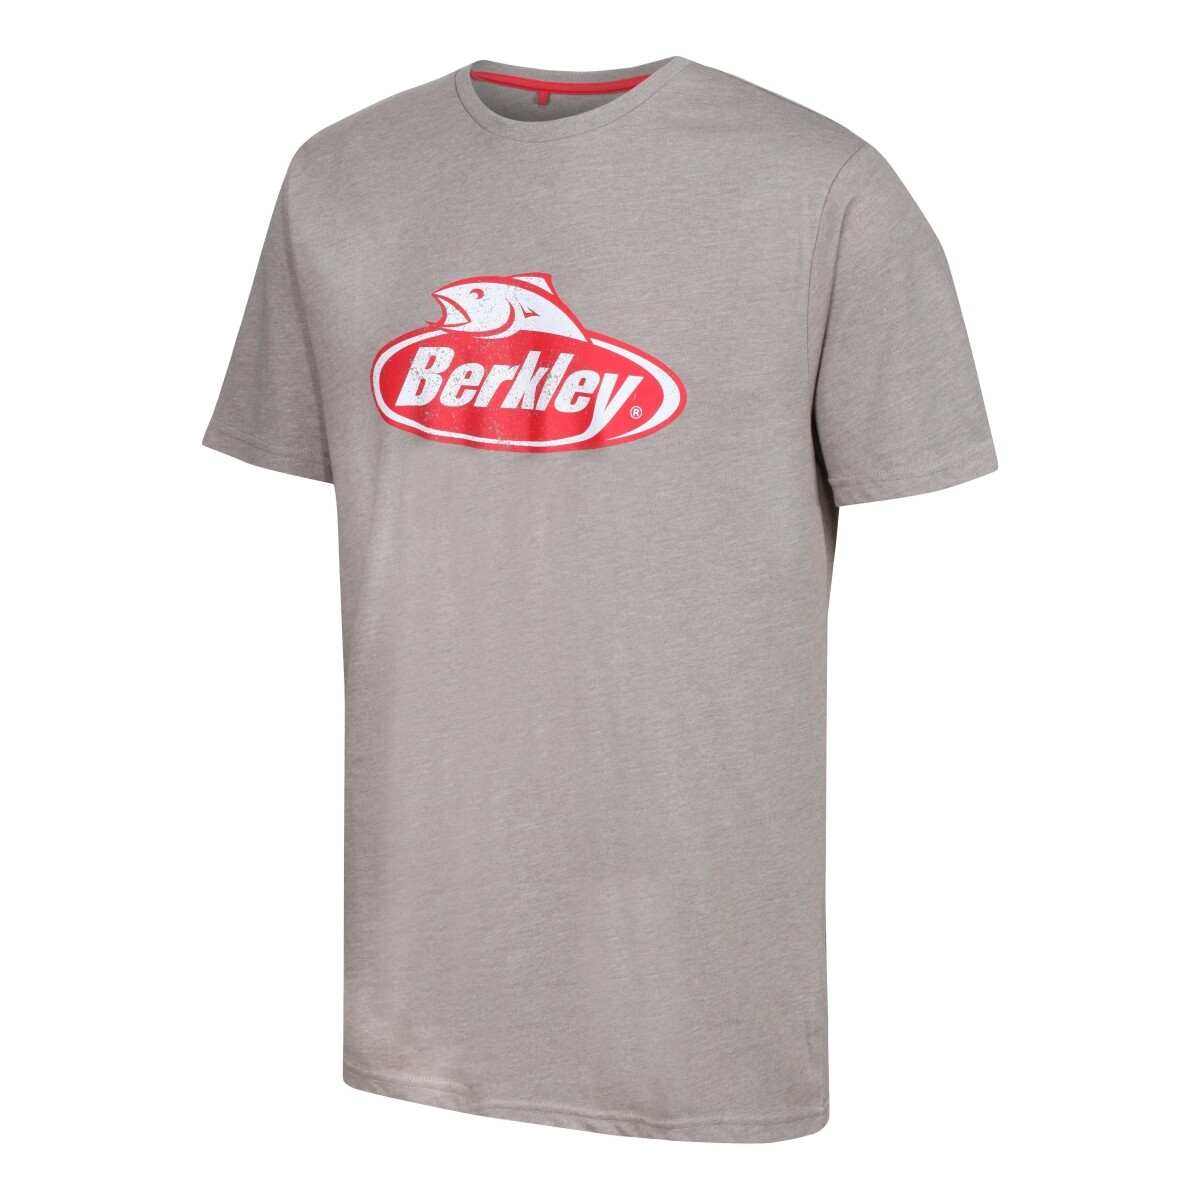 Tričko s krátkým rukávem Berkley T-Shirt Grey 🎣 Na Soutoku